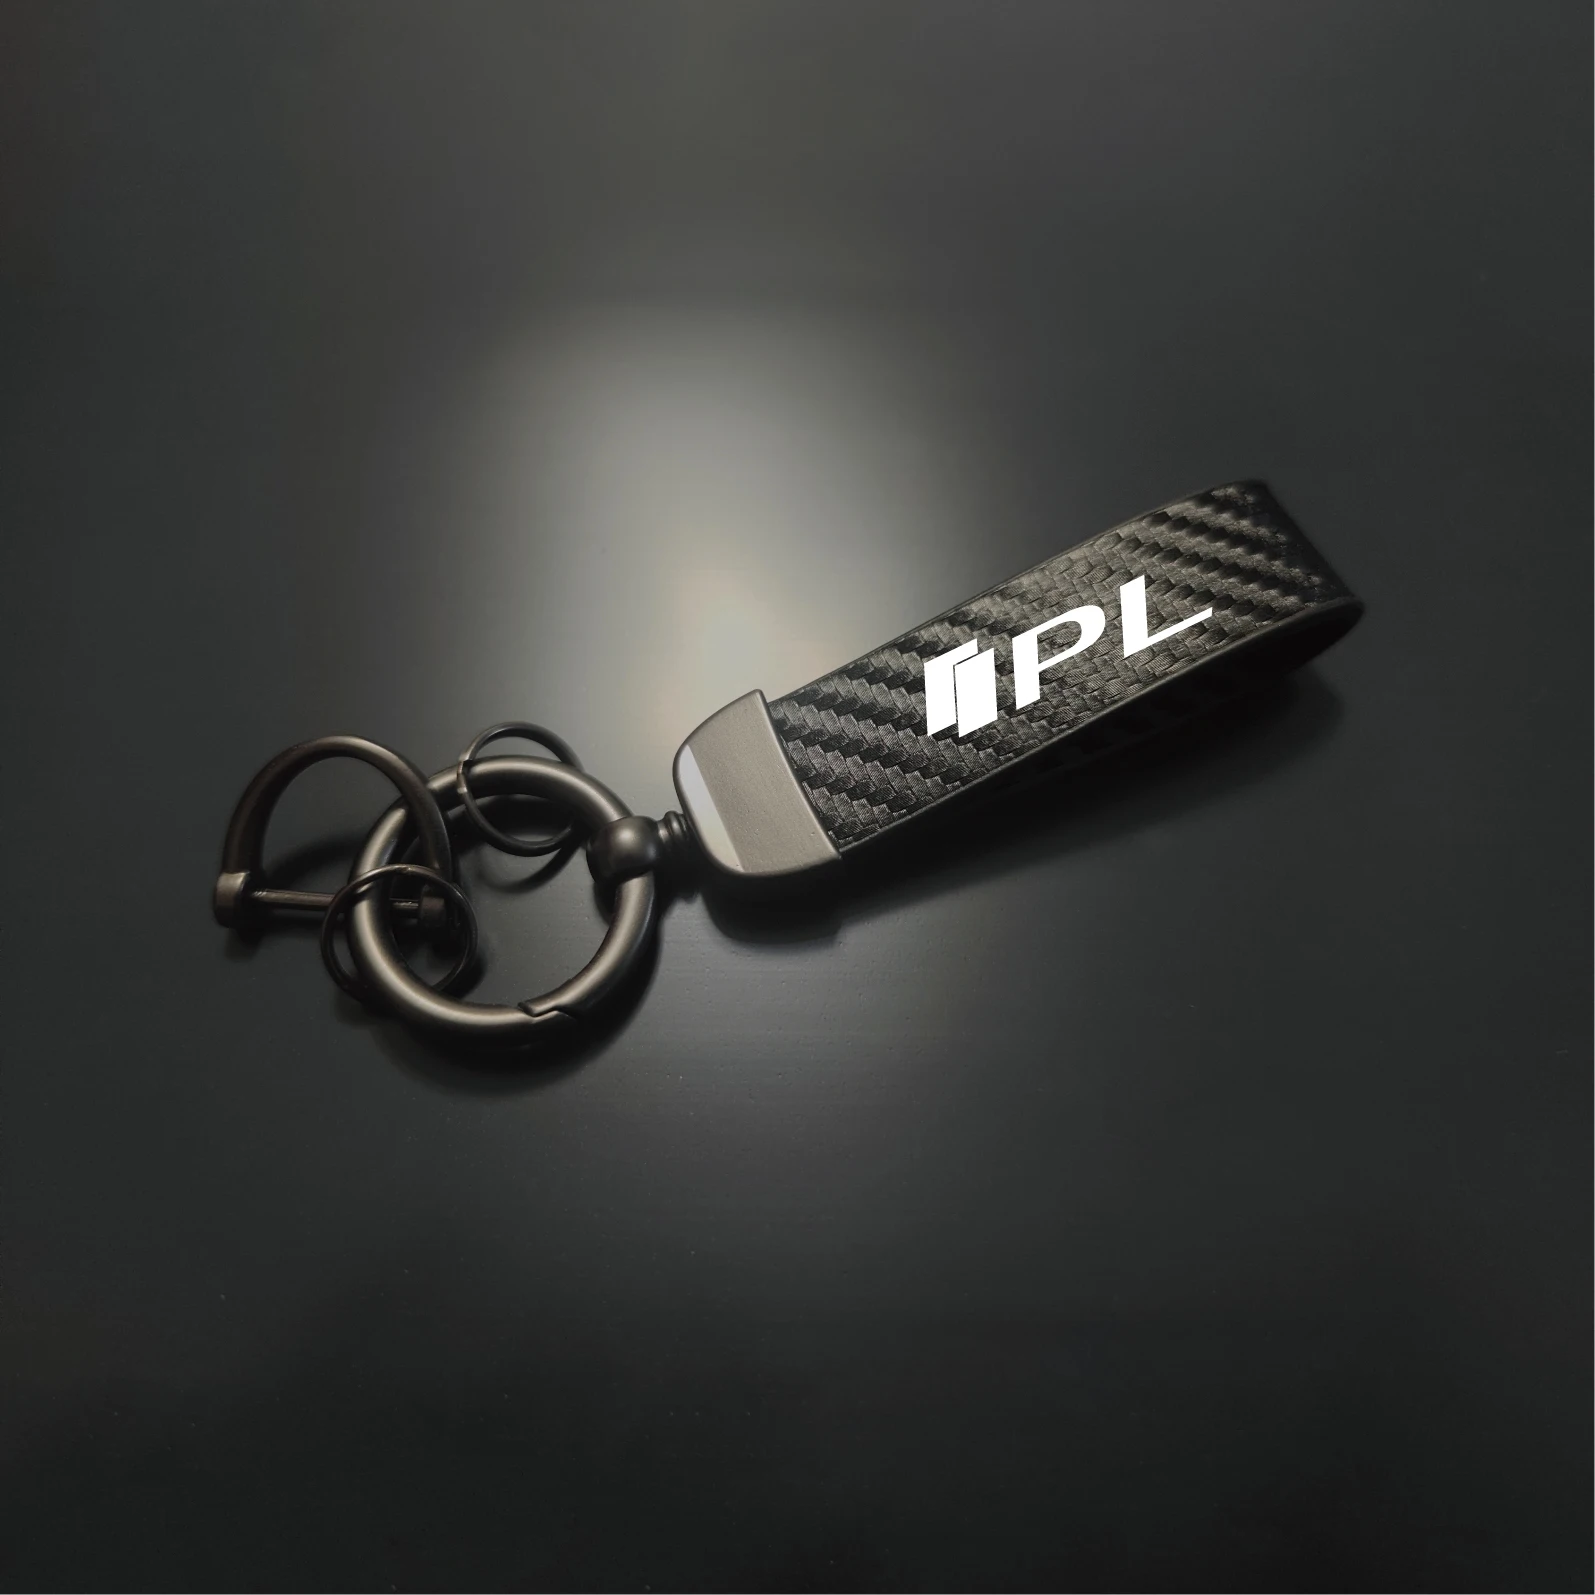 

1pcs Carbon Fiber Car Keychain Leather Zinc Alloy Keyring for Q30 Q50 Q60 Q70 PL QX30 QX50 QX60 QX70 QX80 Auto Accessories